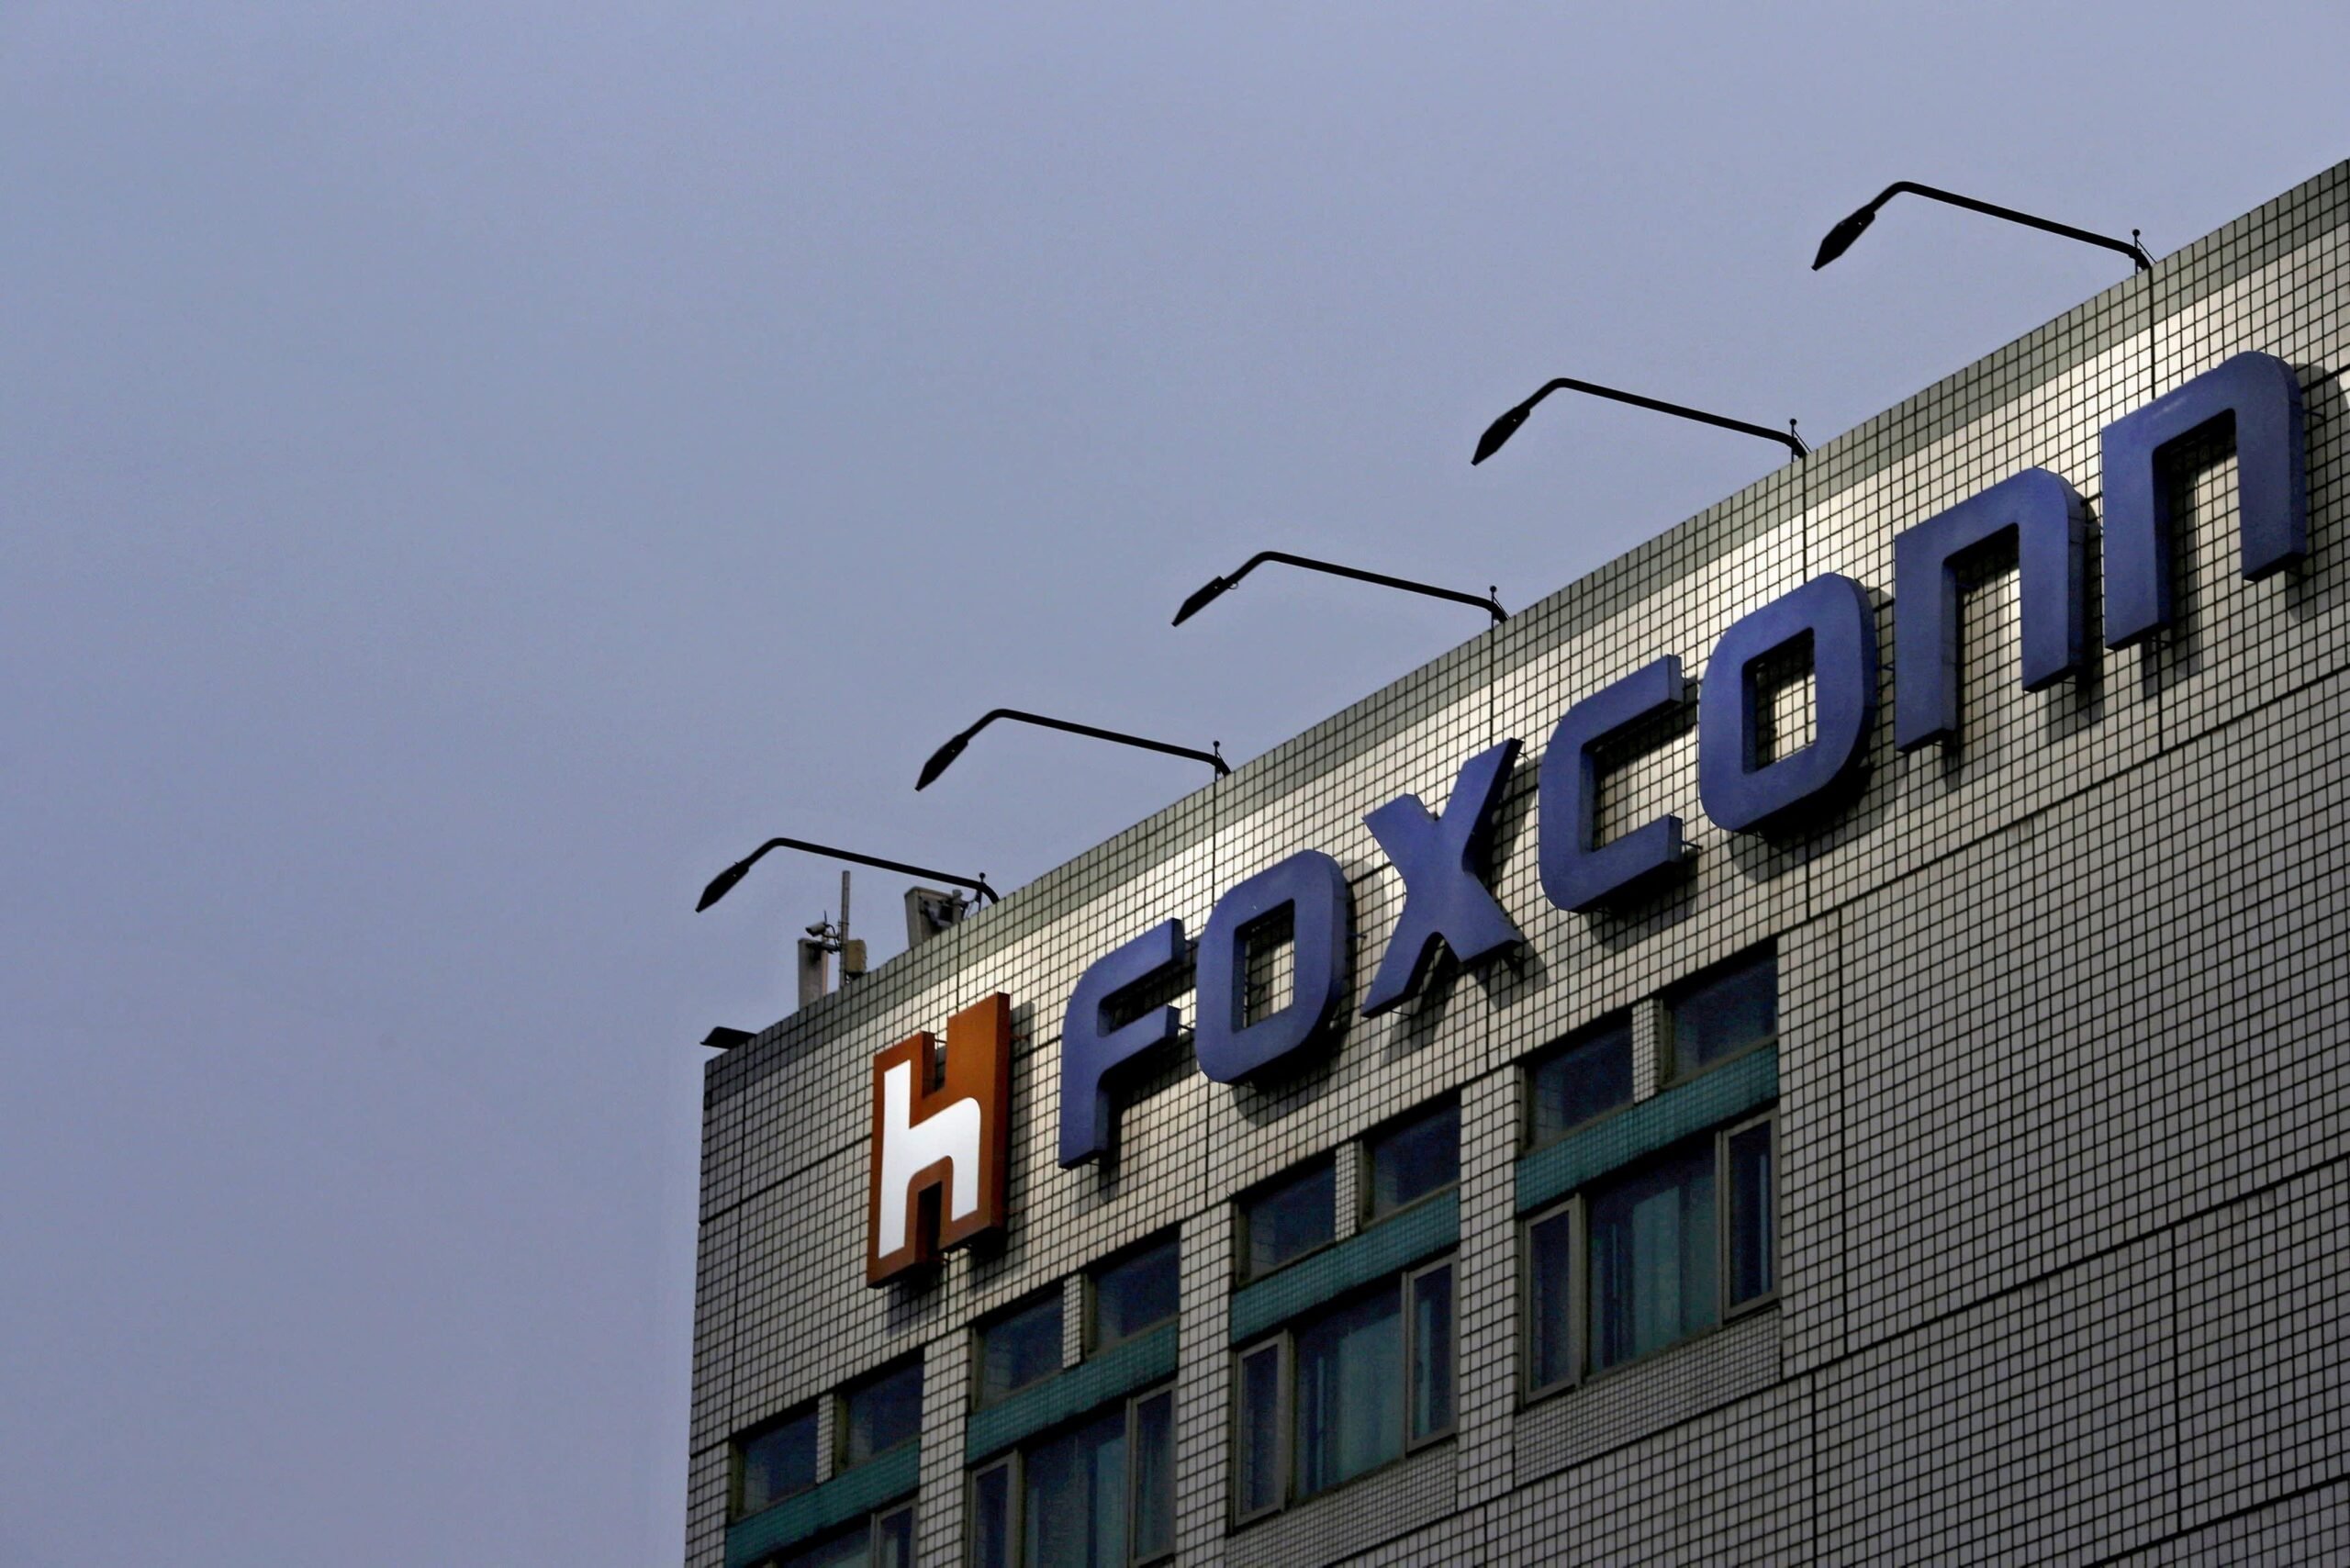 Foxconn sẽ đầu tư 700 triệu USD vào Việt Nam trong năm 2021